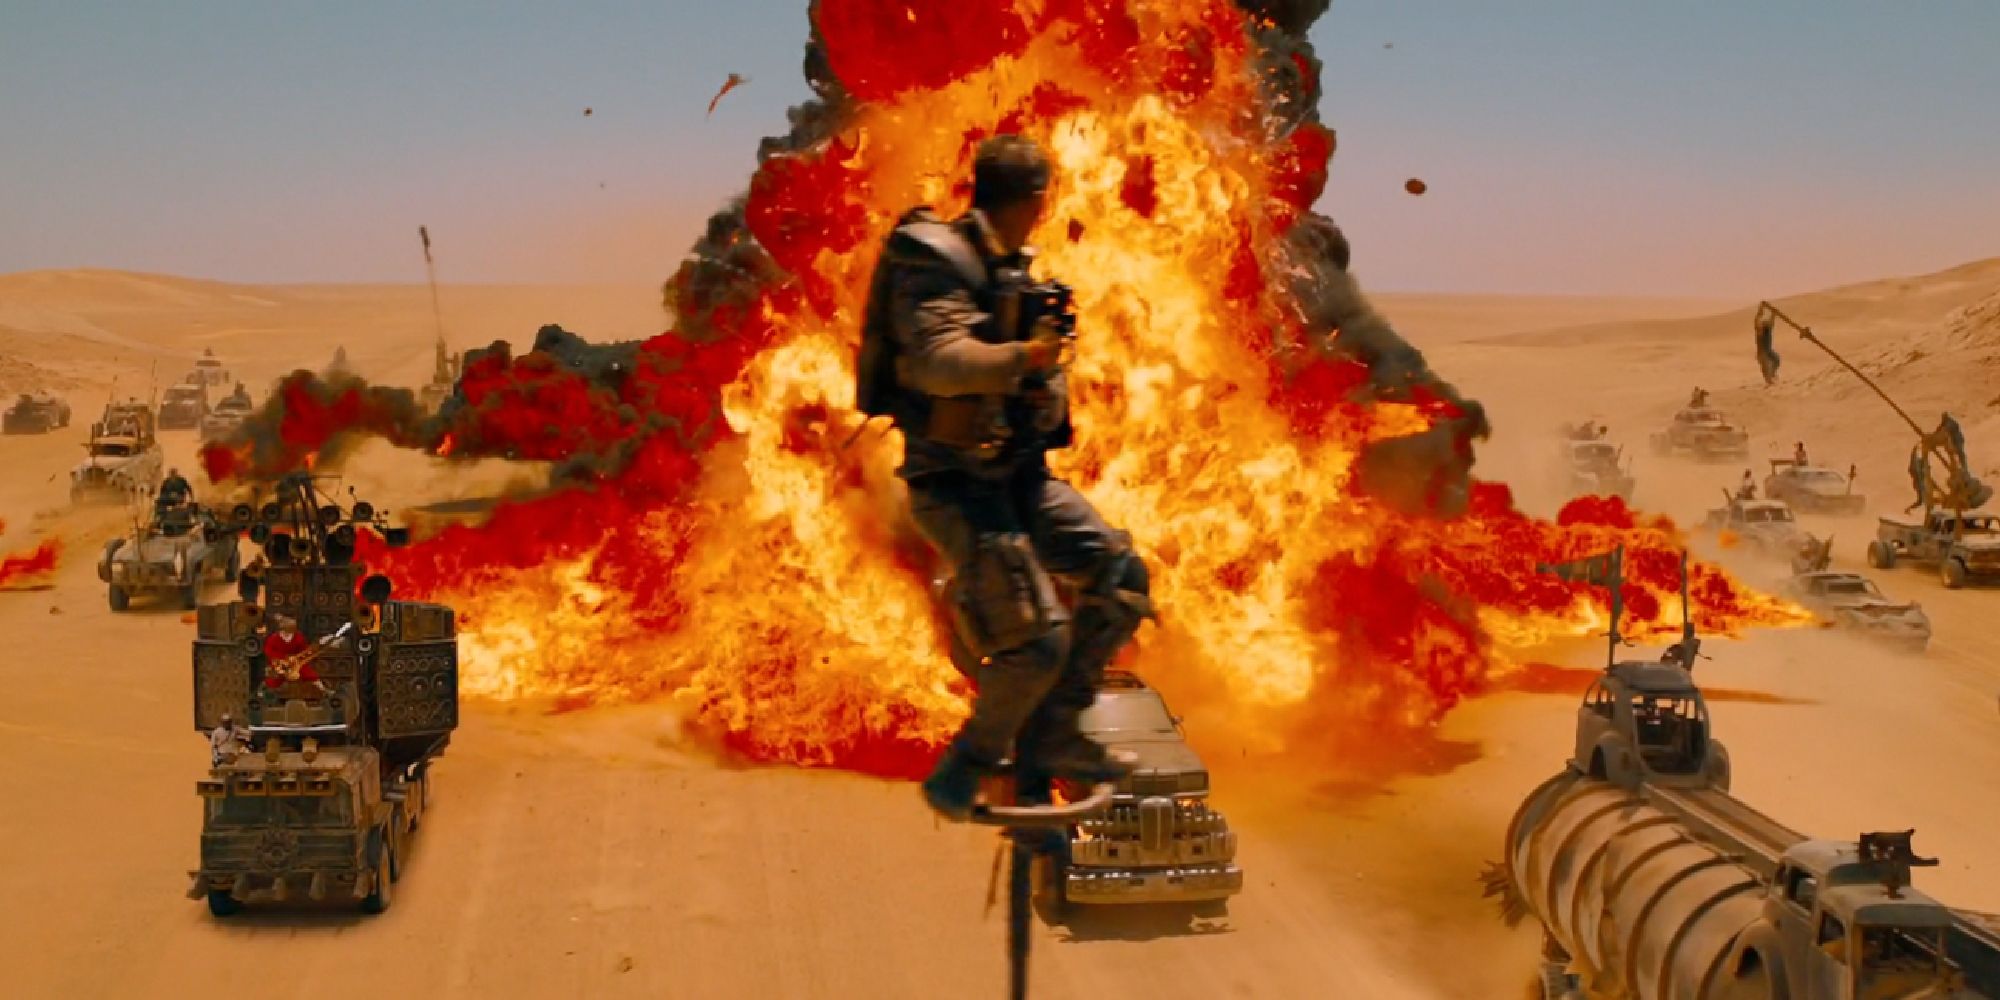 Grande explosion dans Mad Max Fury Road - 2015